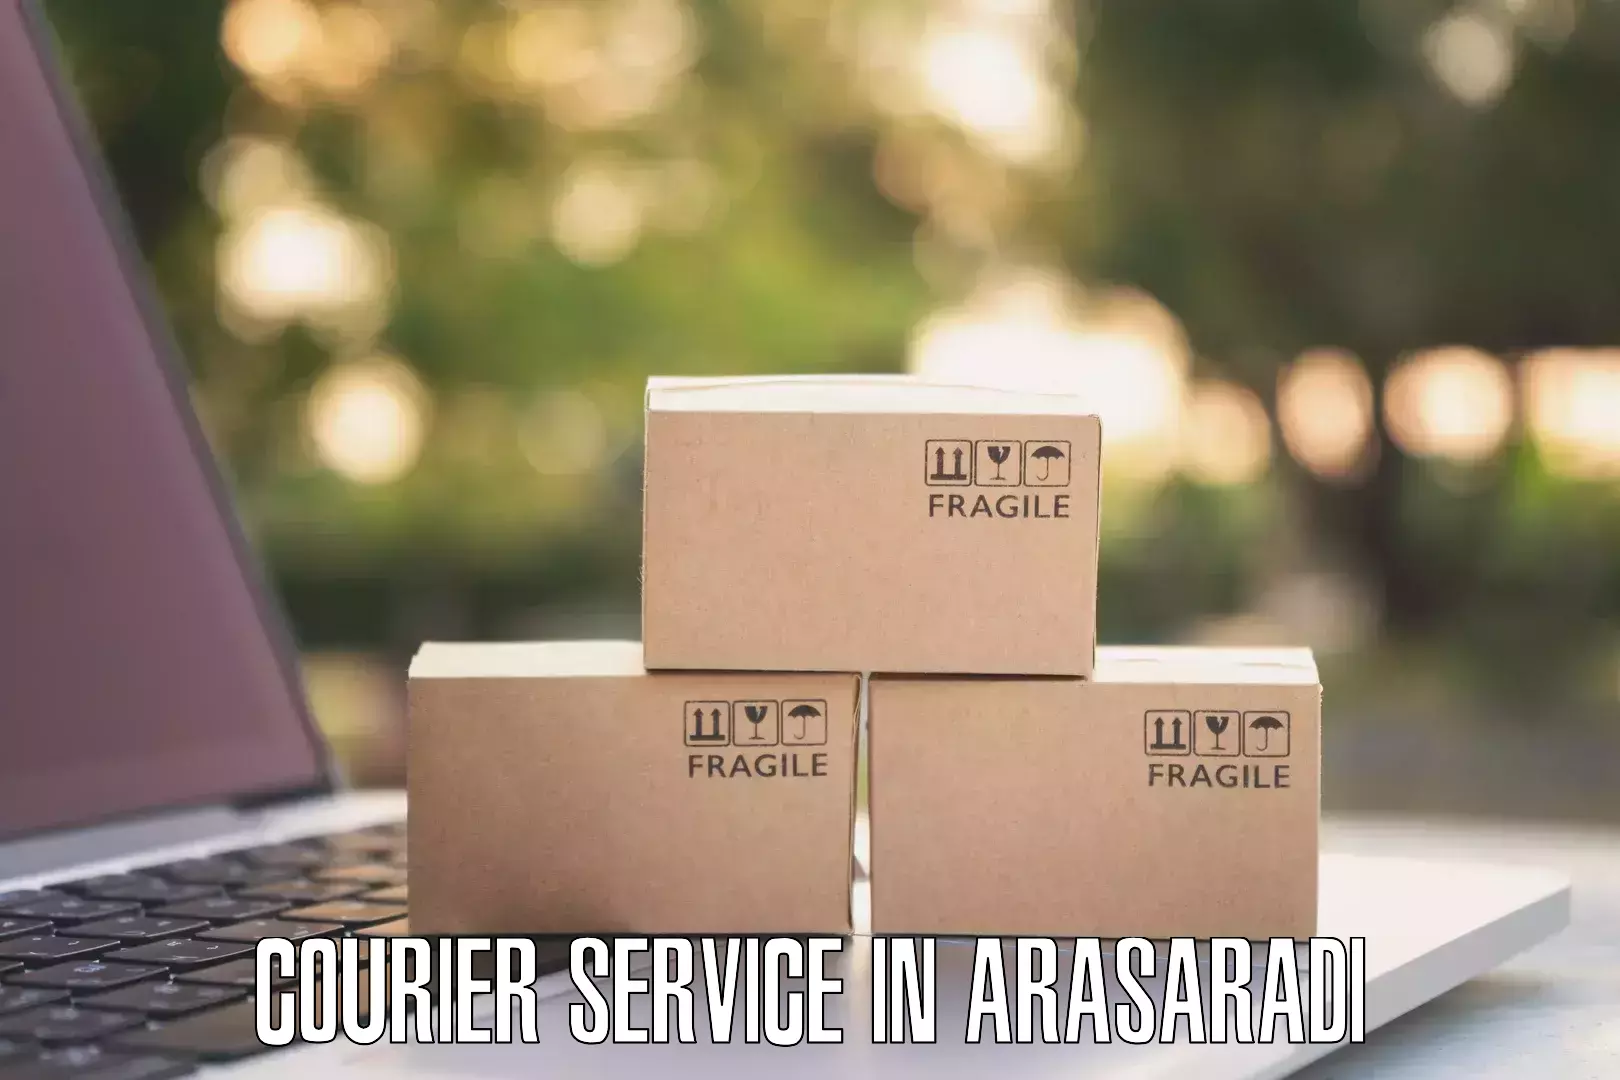 Courier service comparison in Arasaradi